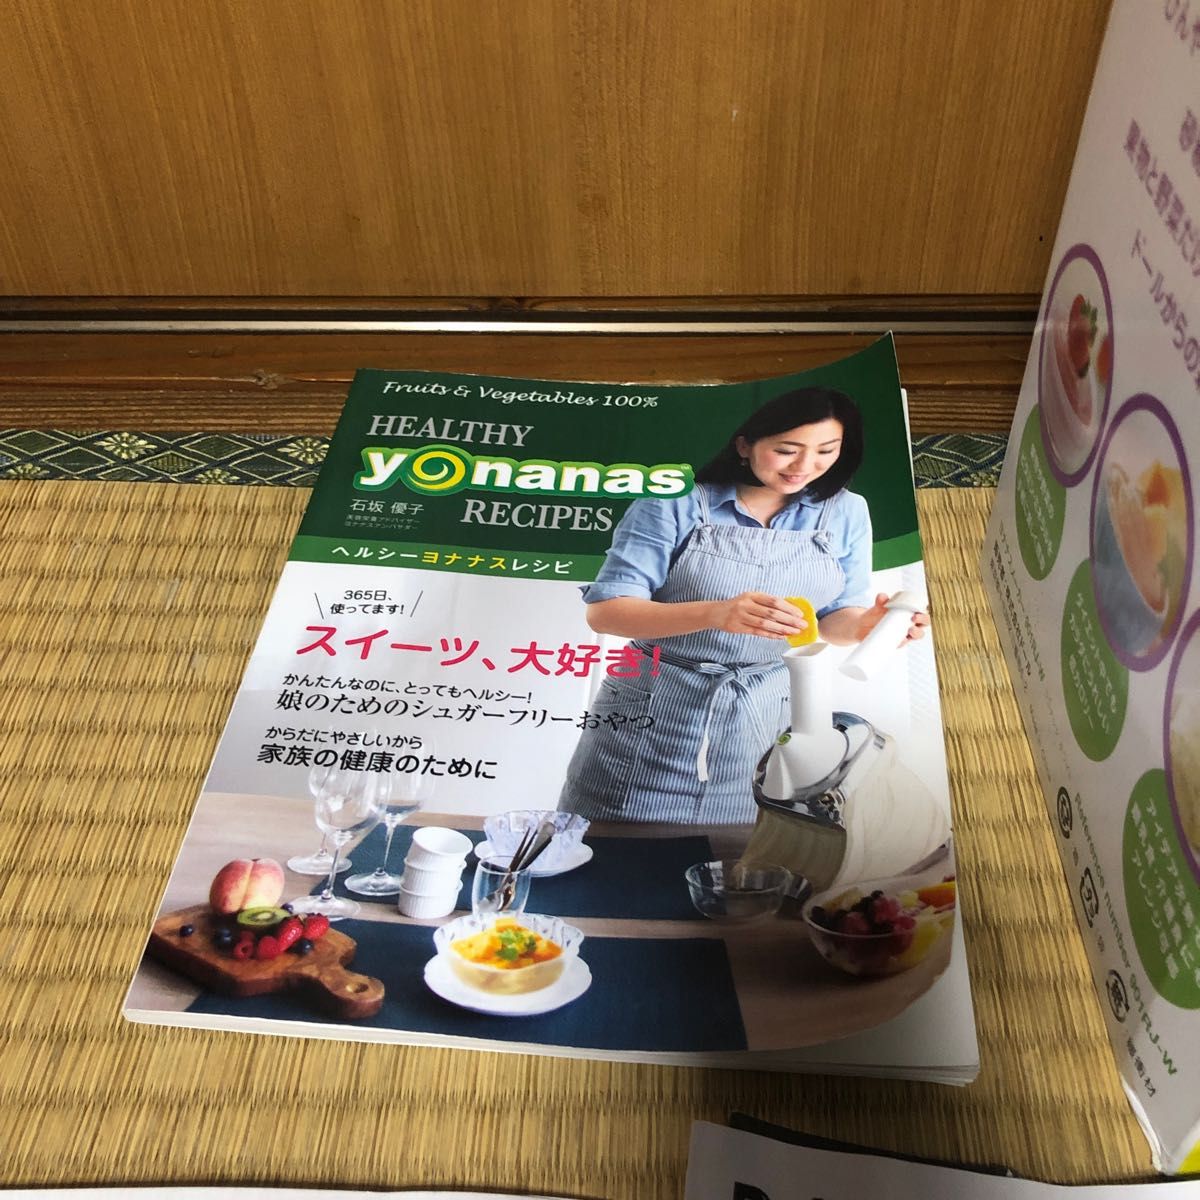 ヨナナスメーカー アイスクリームメーカー ドール 使い方 レシピ アレンジ スムージー yonanas